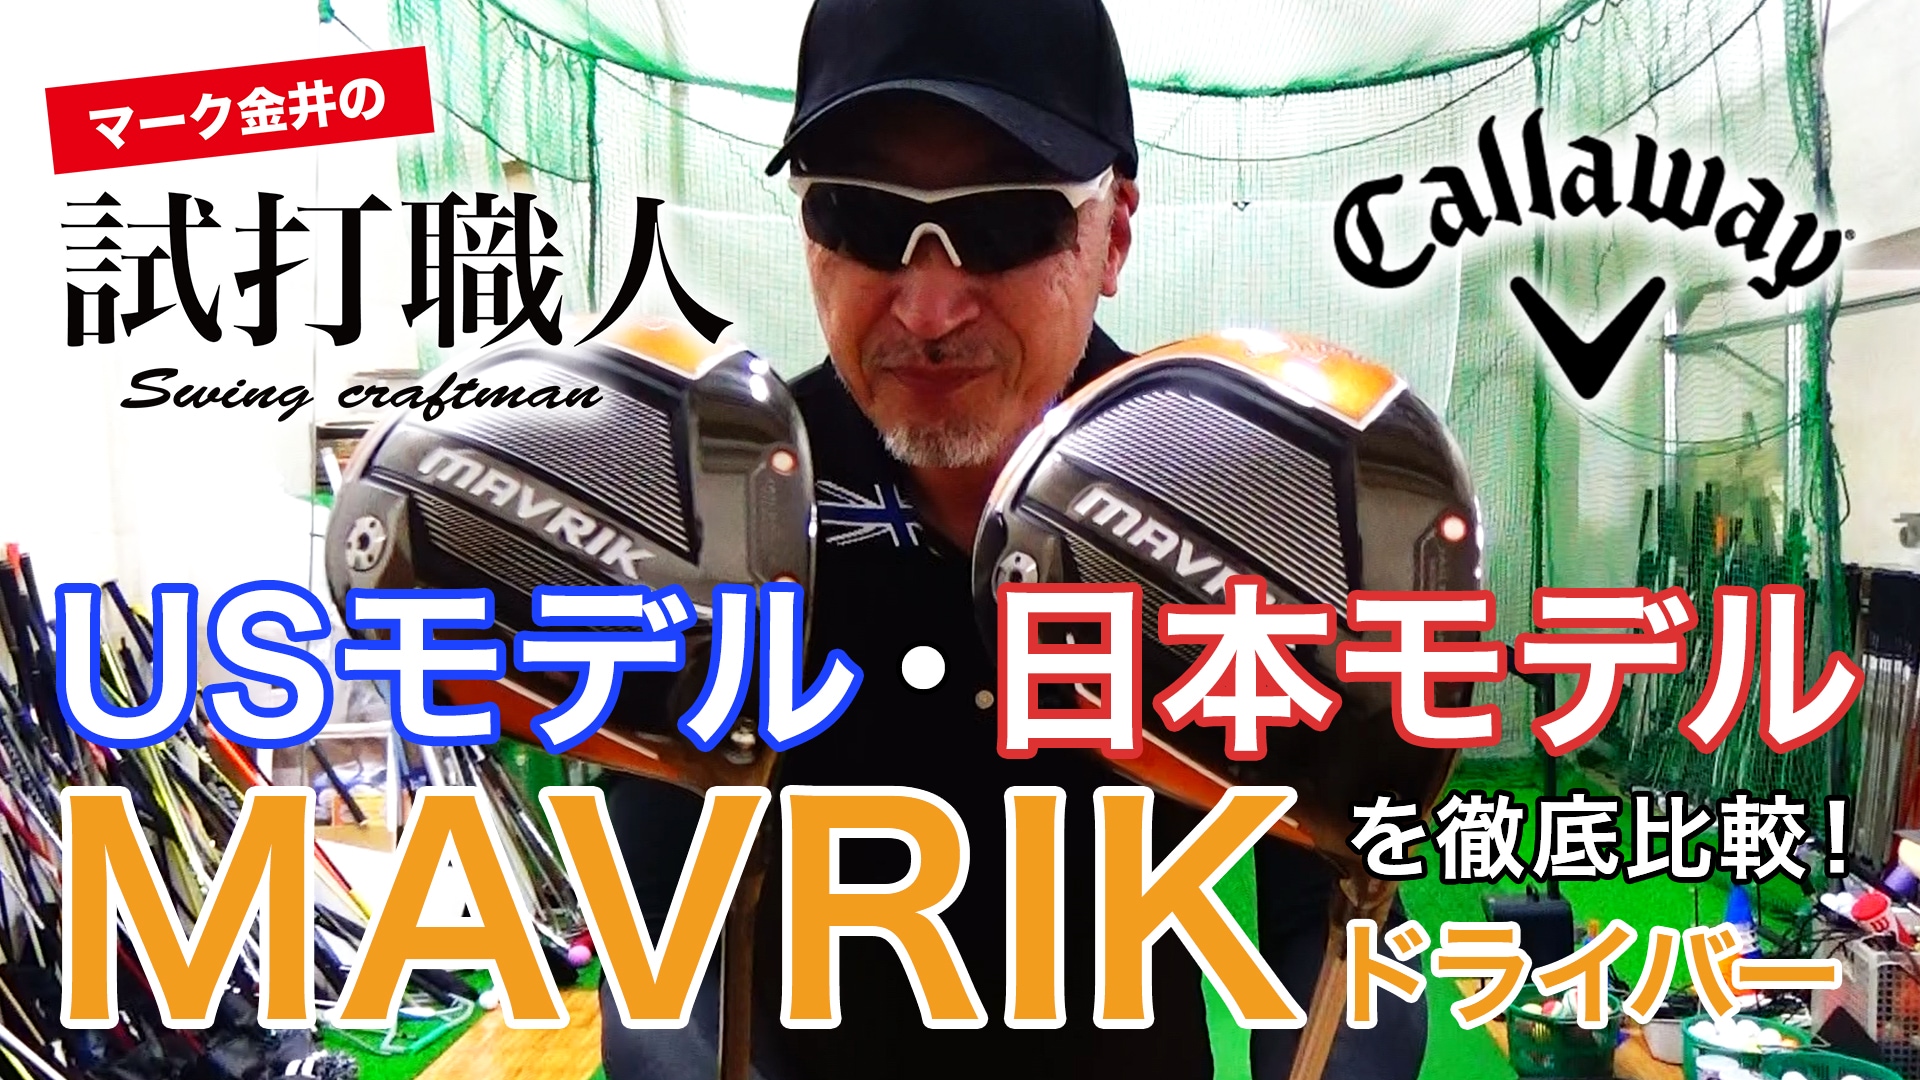 Gallaway FW #7 (MAVRIK USモデル) クラブ ゴルフ スポーツ・レジャー 取扱 店 大阪